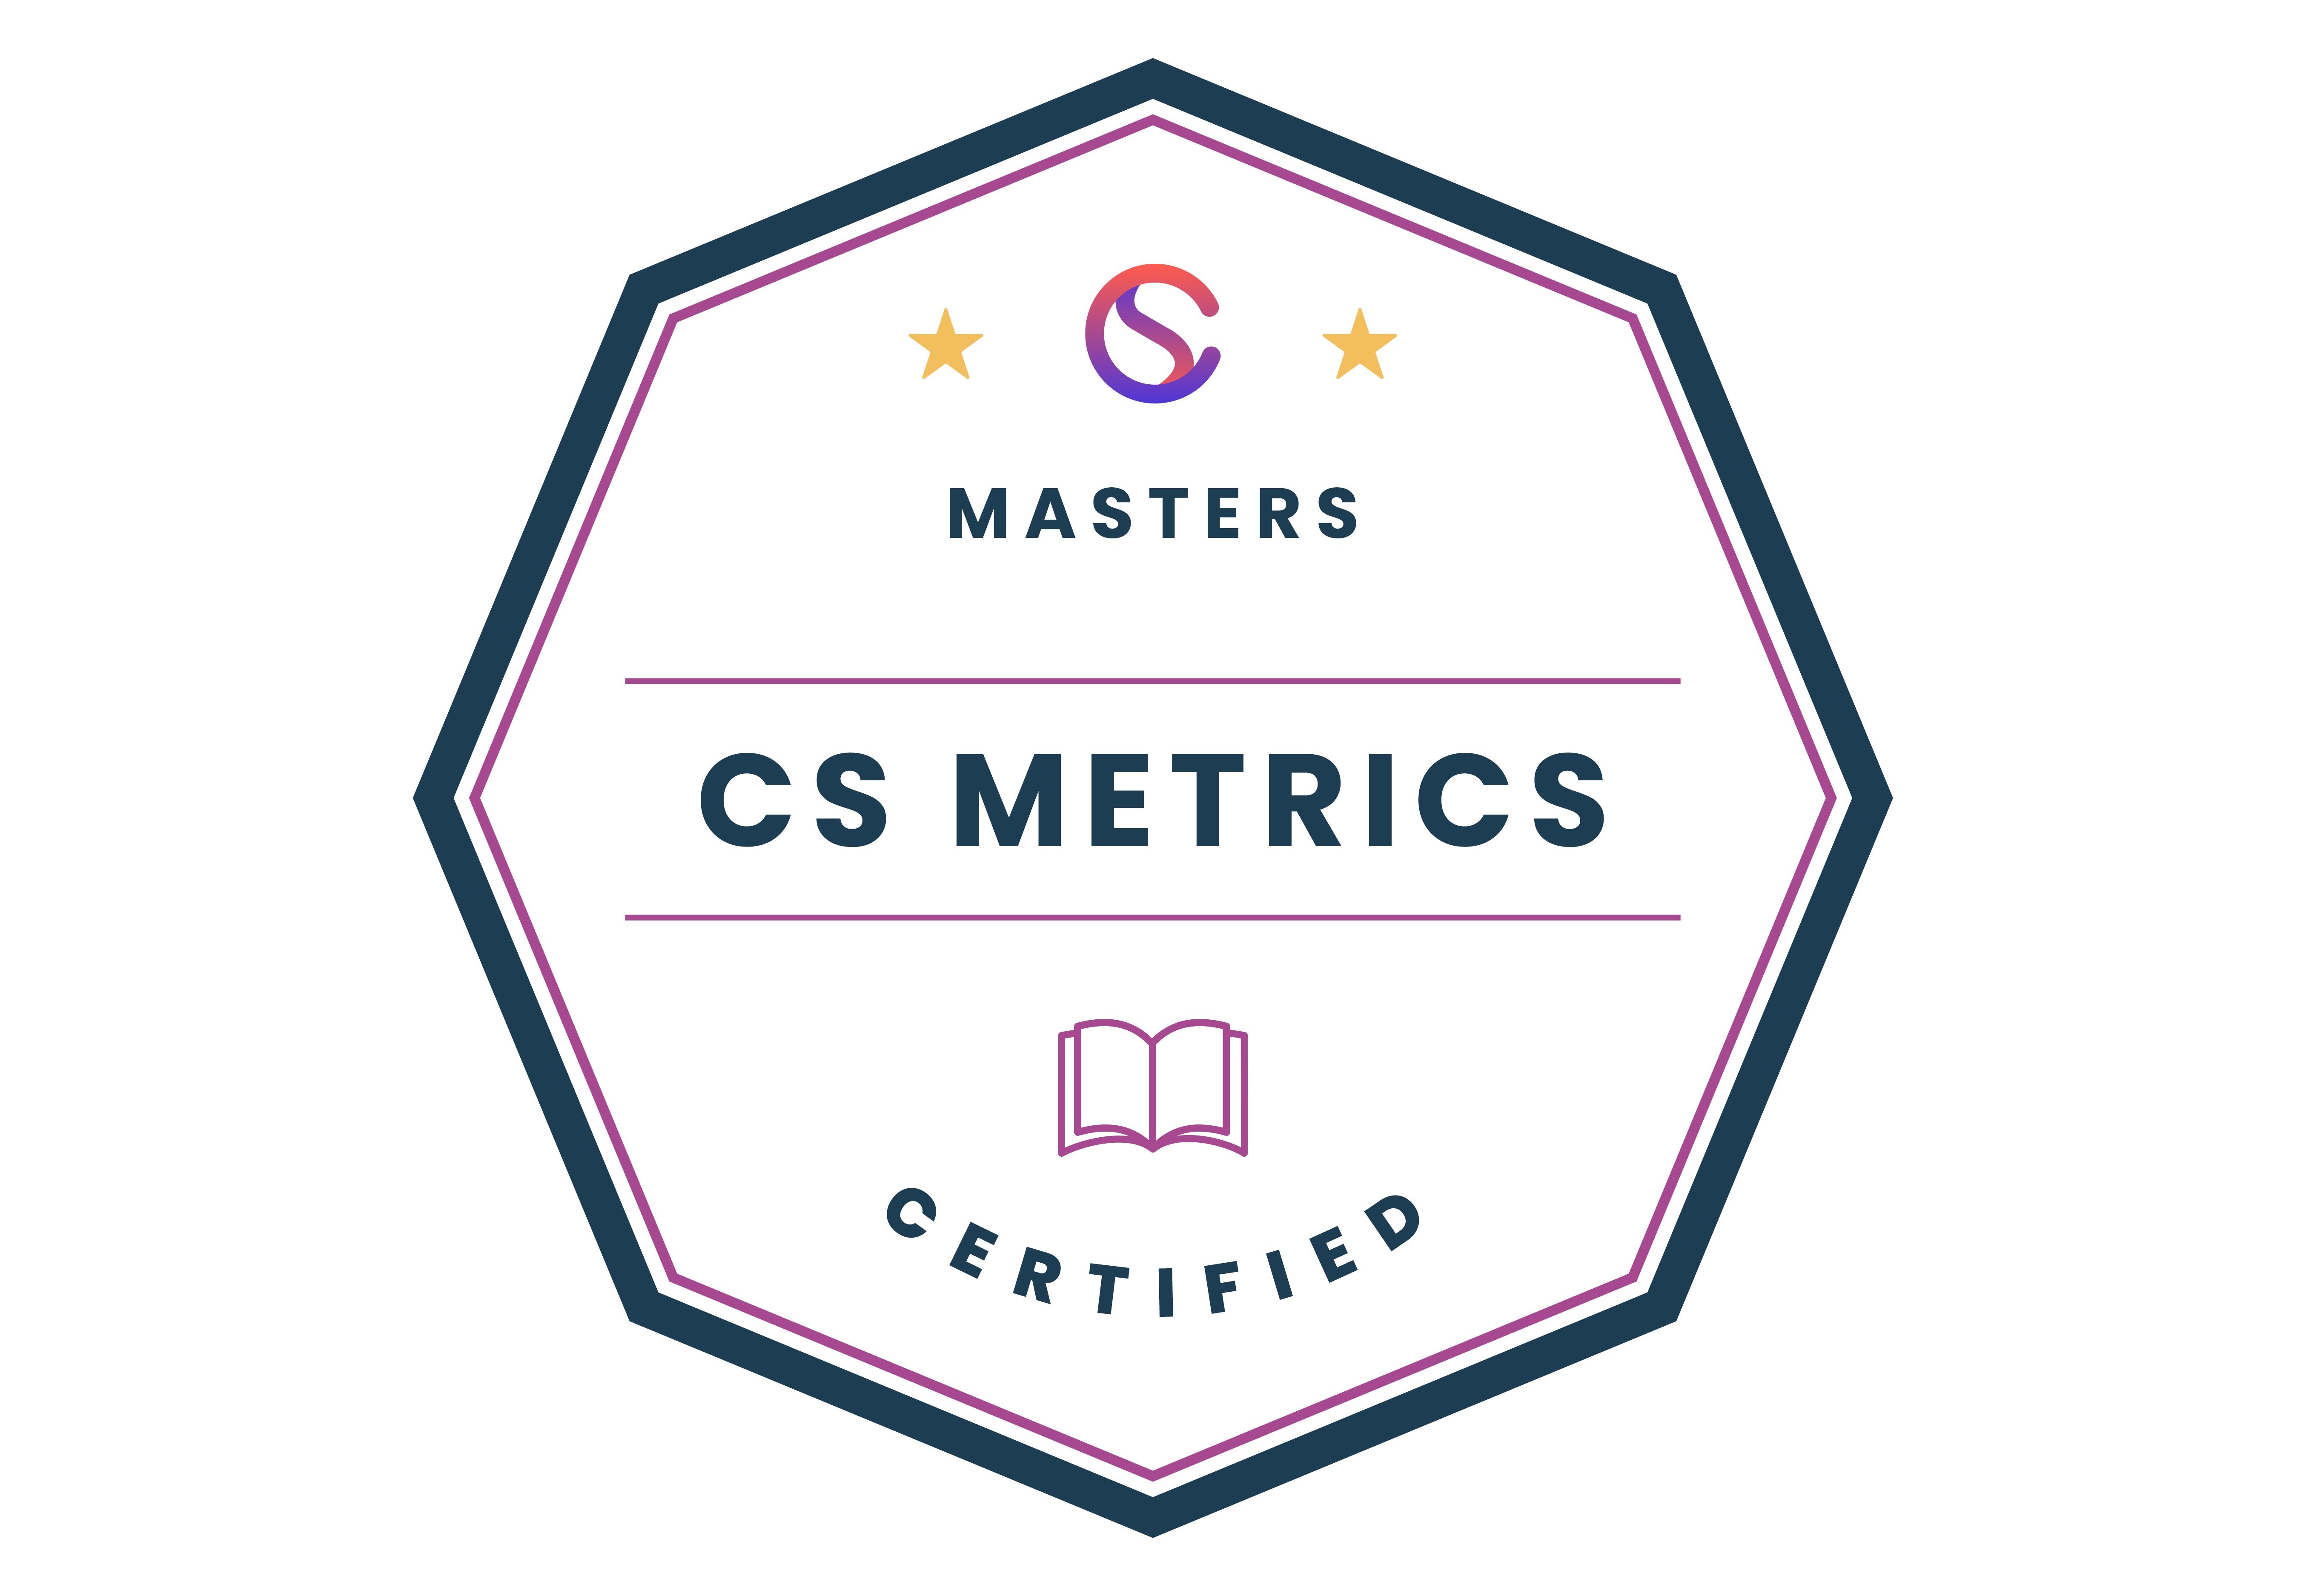 Customer Success Metrics badge